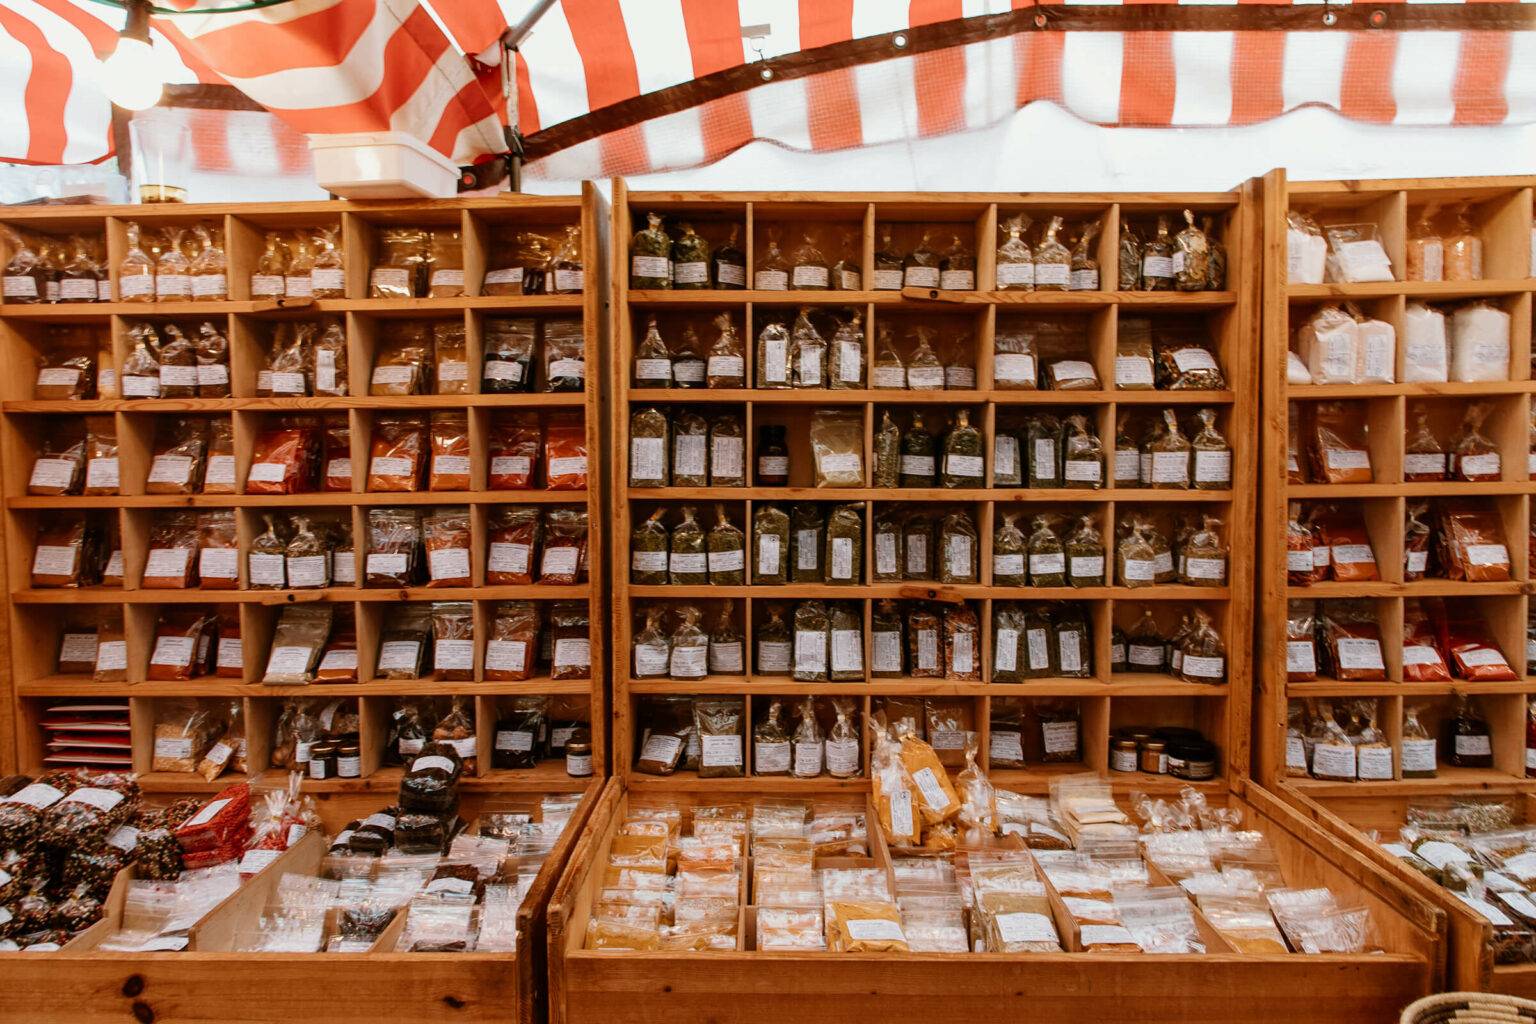 Feine Adresse für Tee, Gewürze und Trockenfrüchte: Der Aromagarten auf dem Isemarkt.